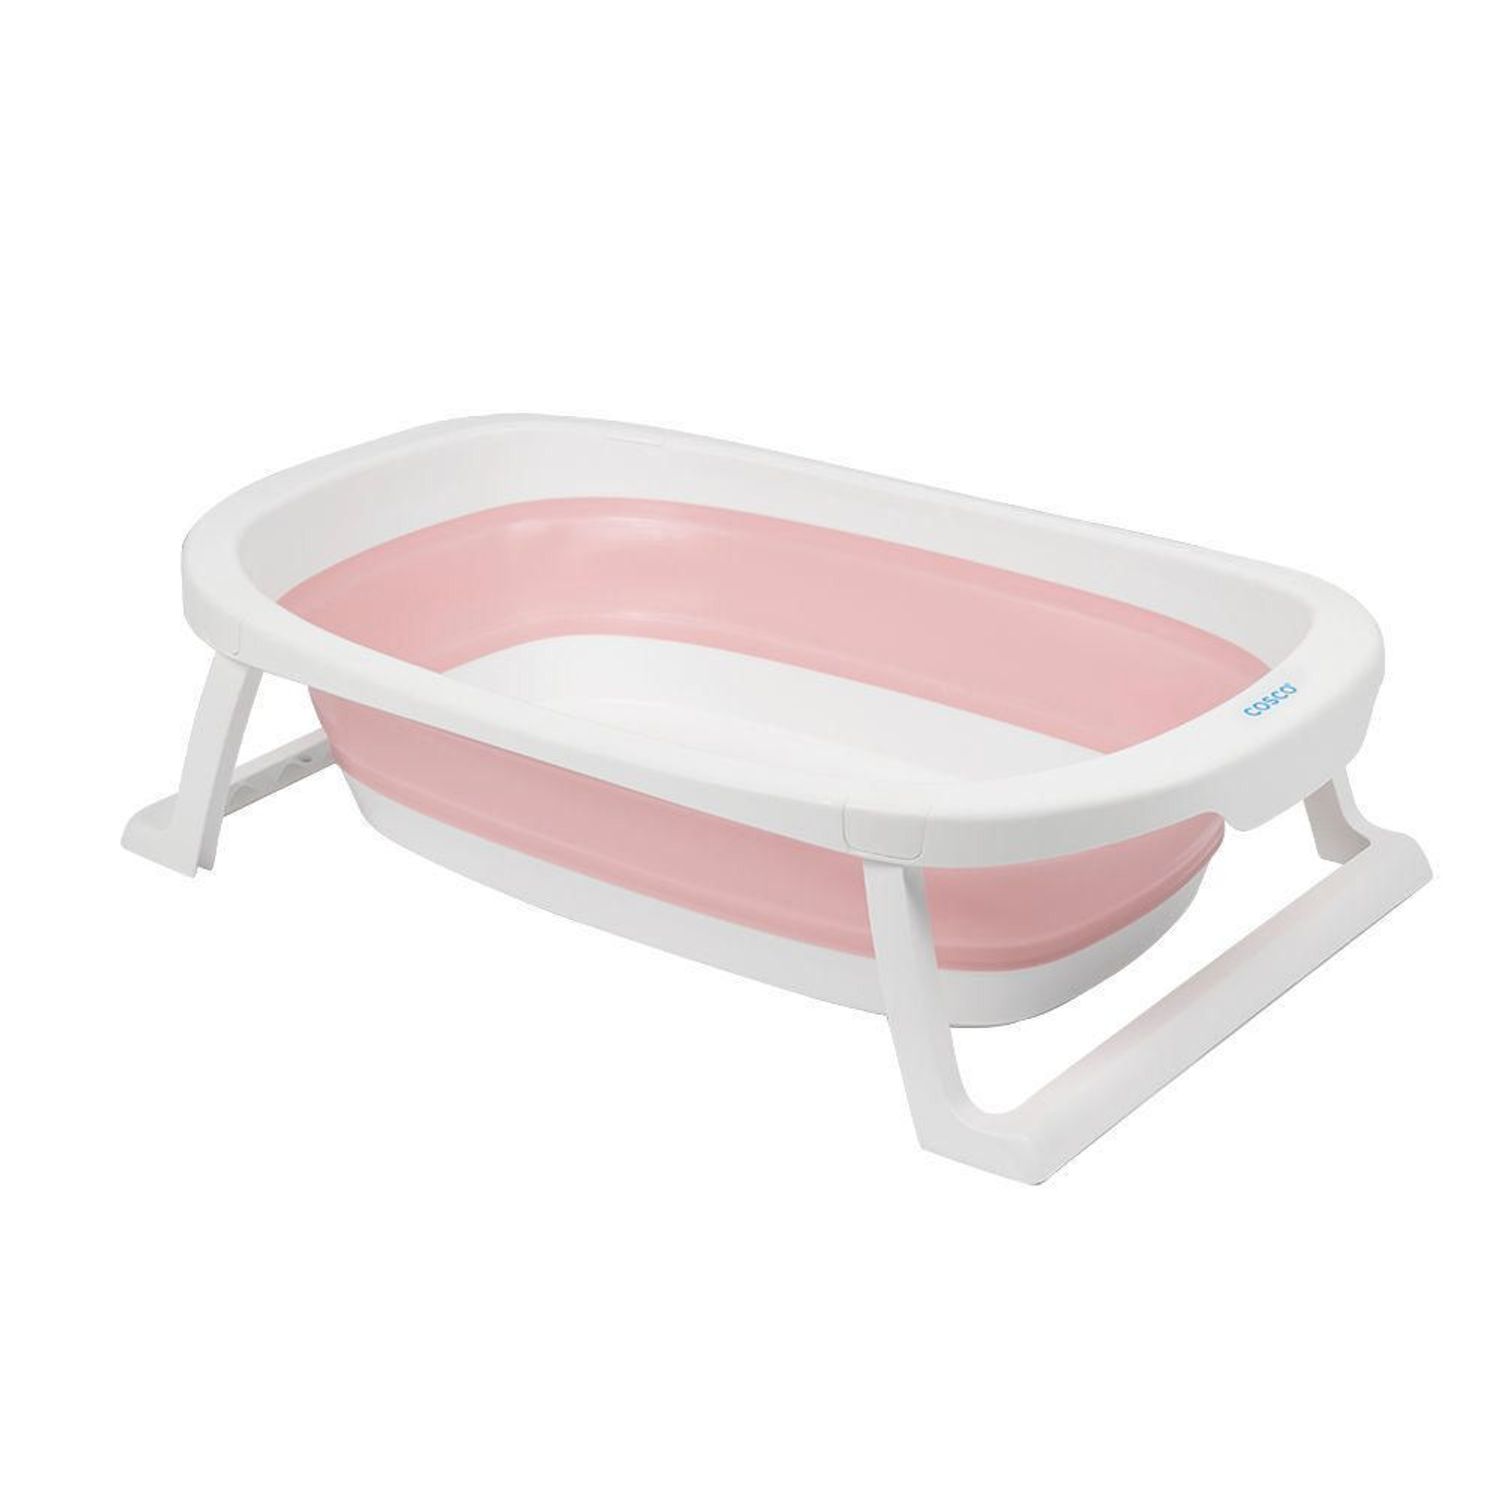 FooMoTech Bañera portátil para adultos, bañera plegable extra